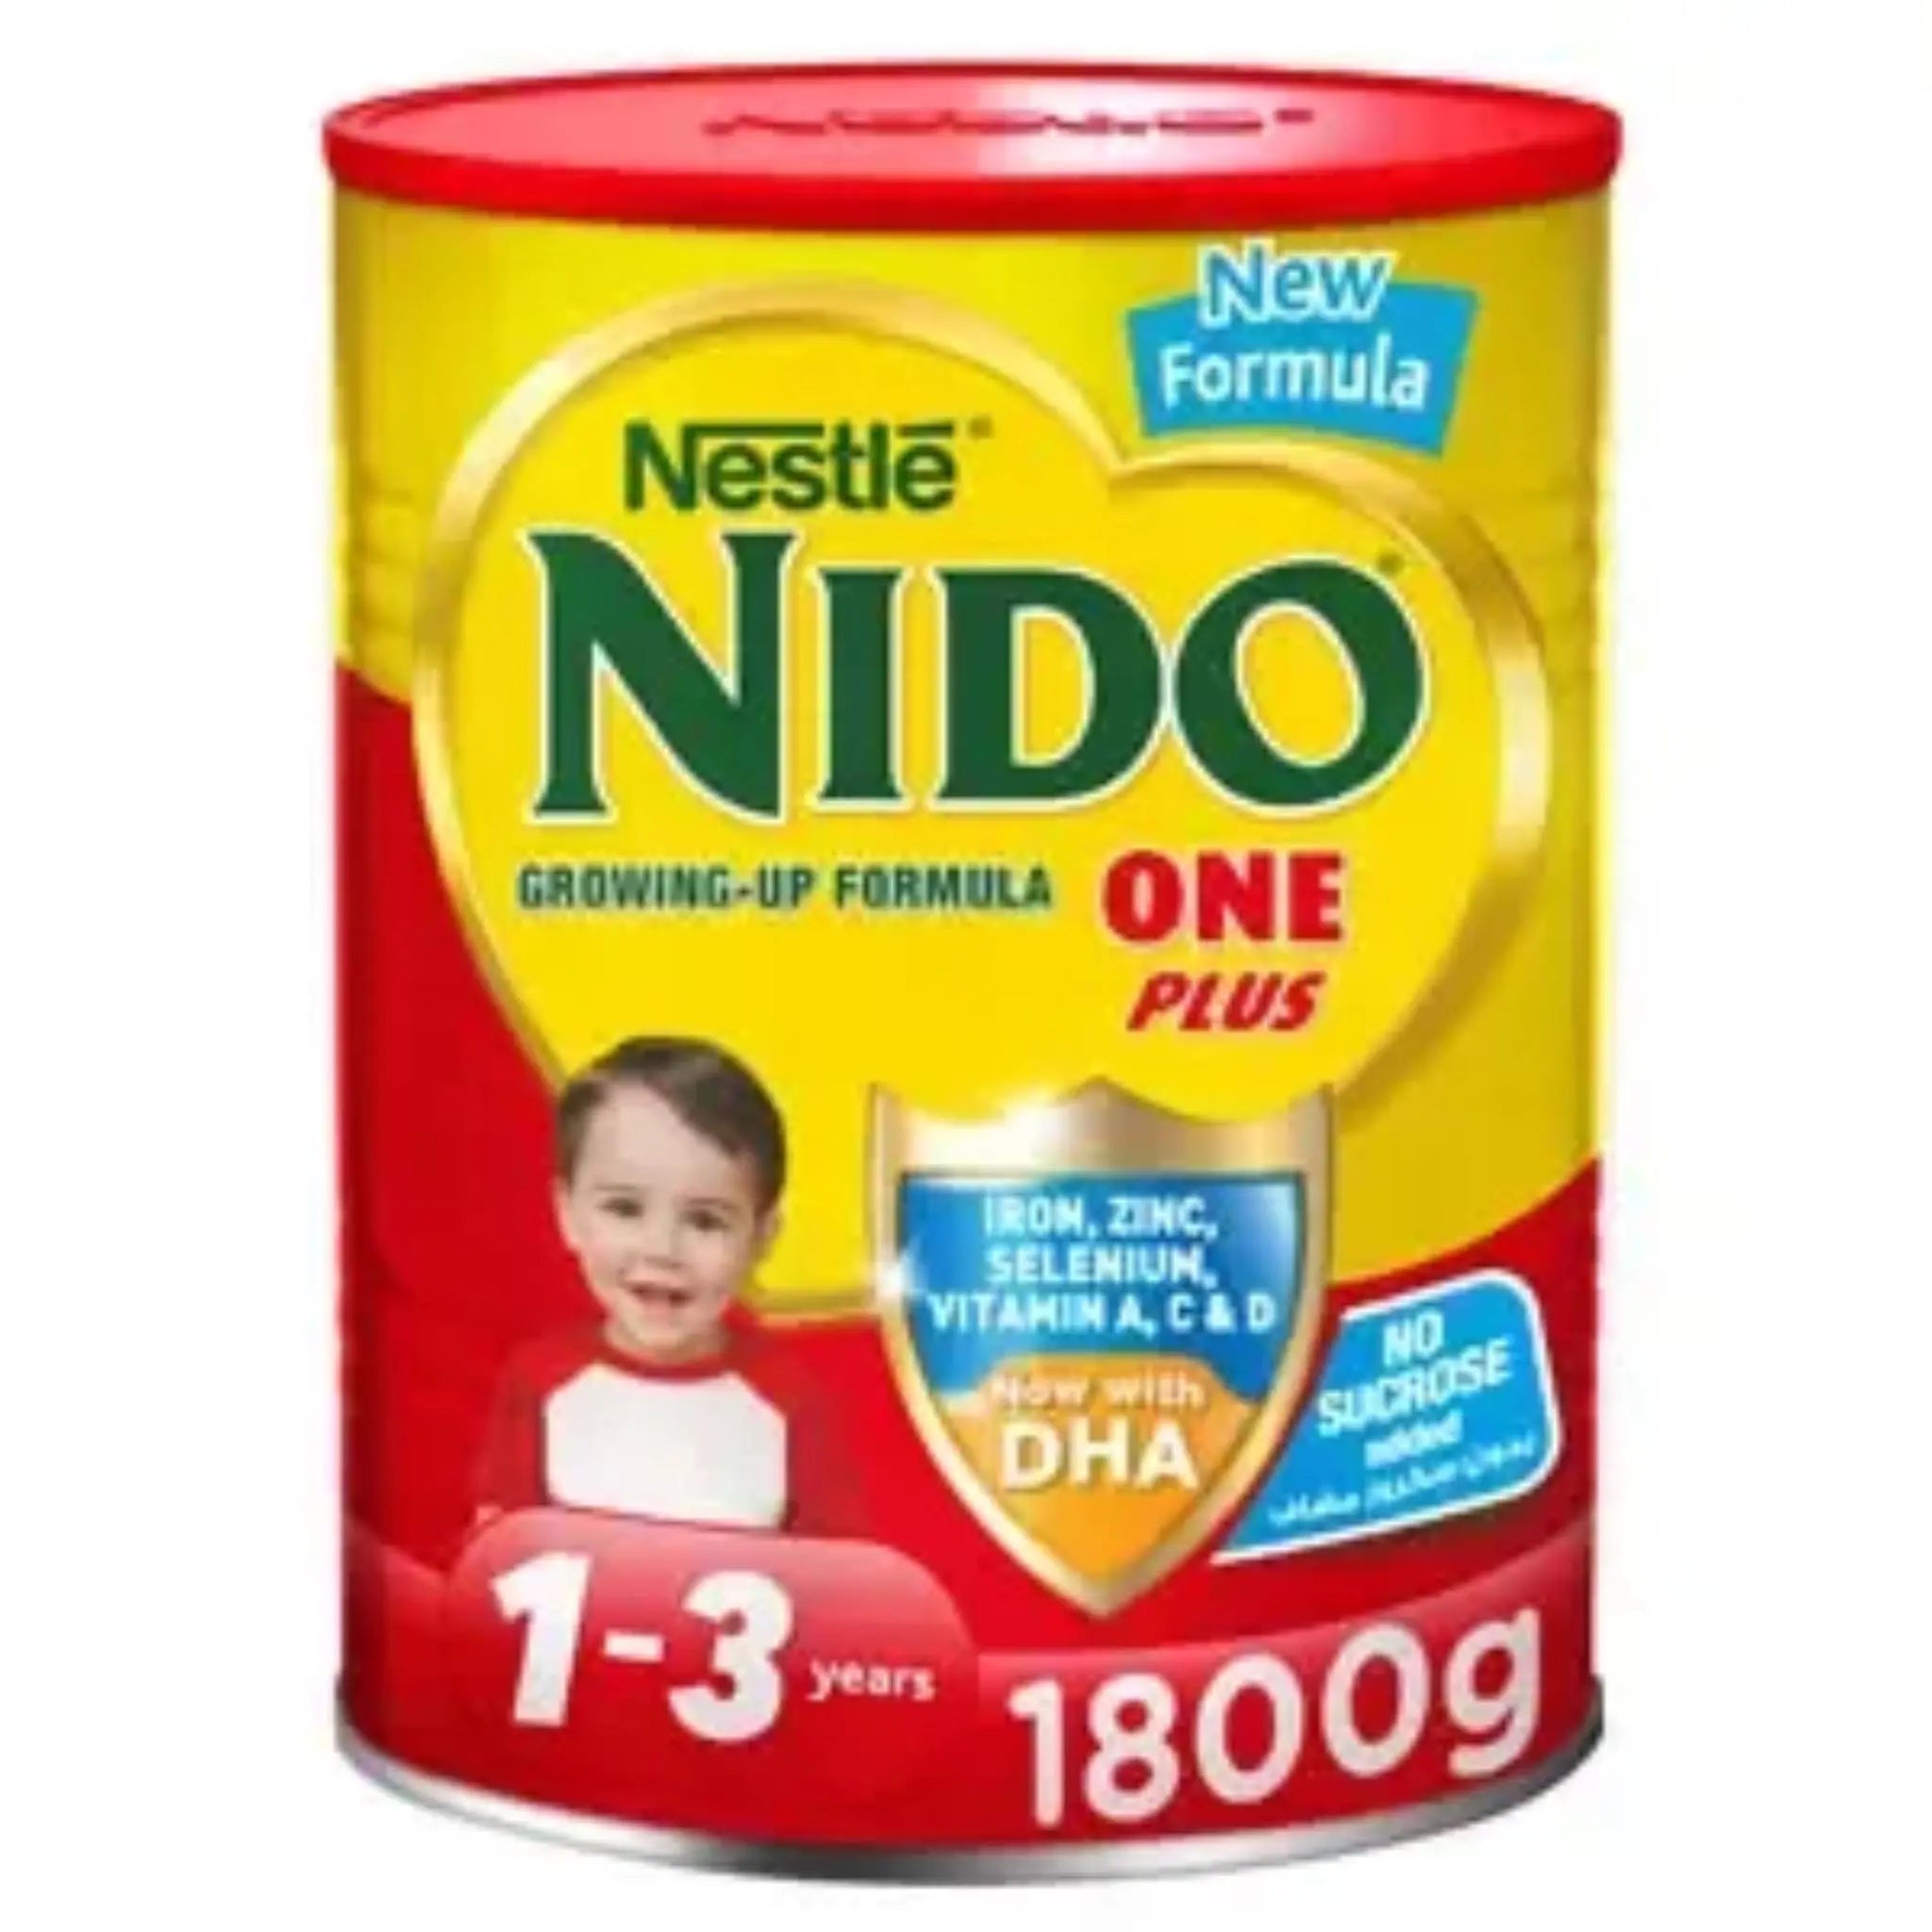 NIDO 1+ GUM 1800G - Pack of 2 Marino.AE